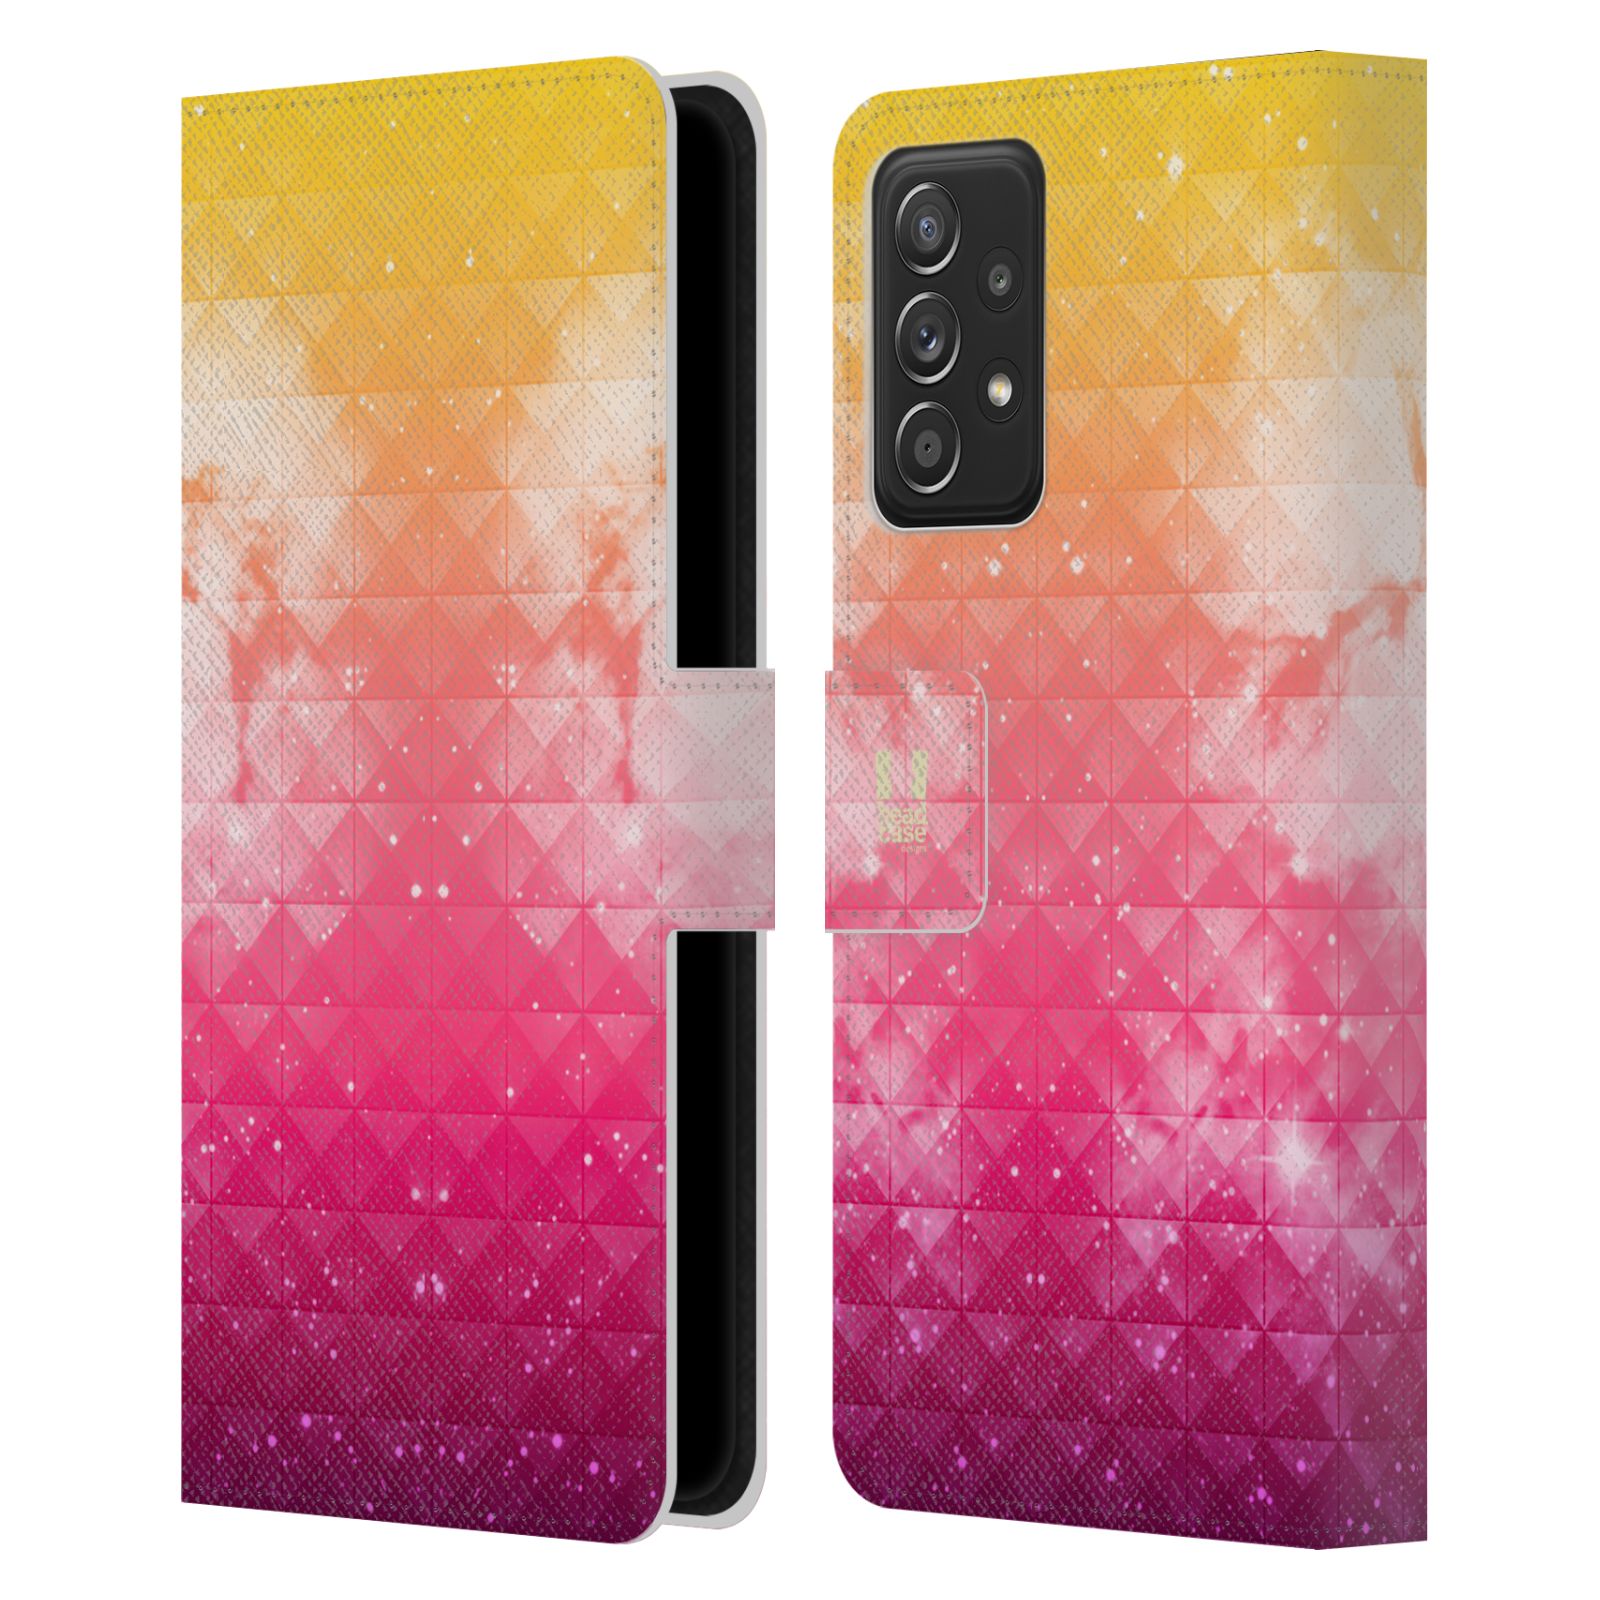 Pouzdro HEAD CASE na mobil Samsung Galaxy A52 / A52 5G / A52s 5G barevná vesmírná mlhovina oranžová a růžová